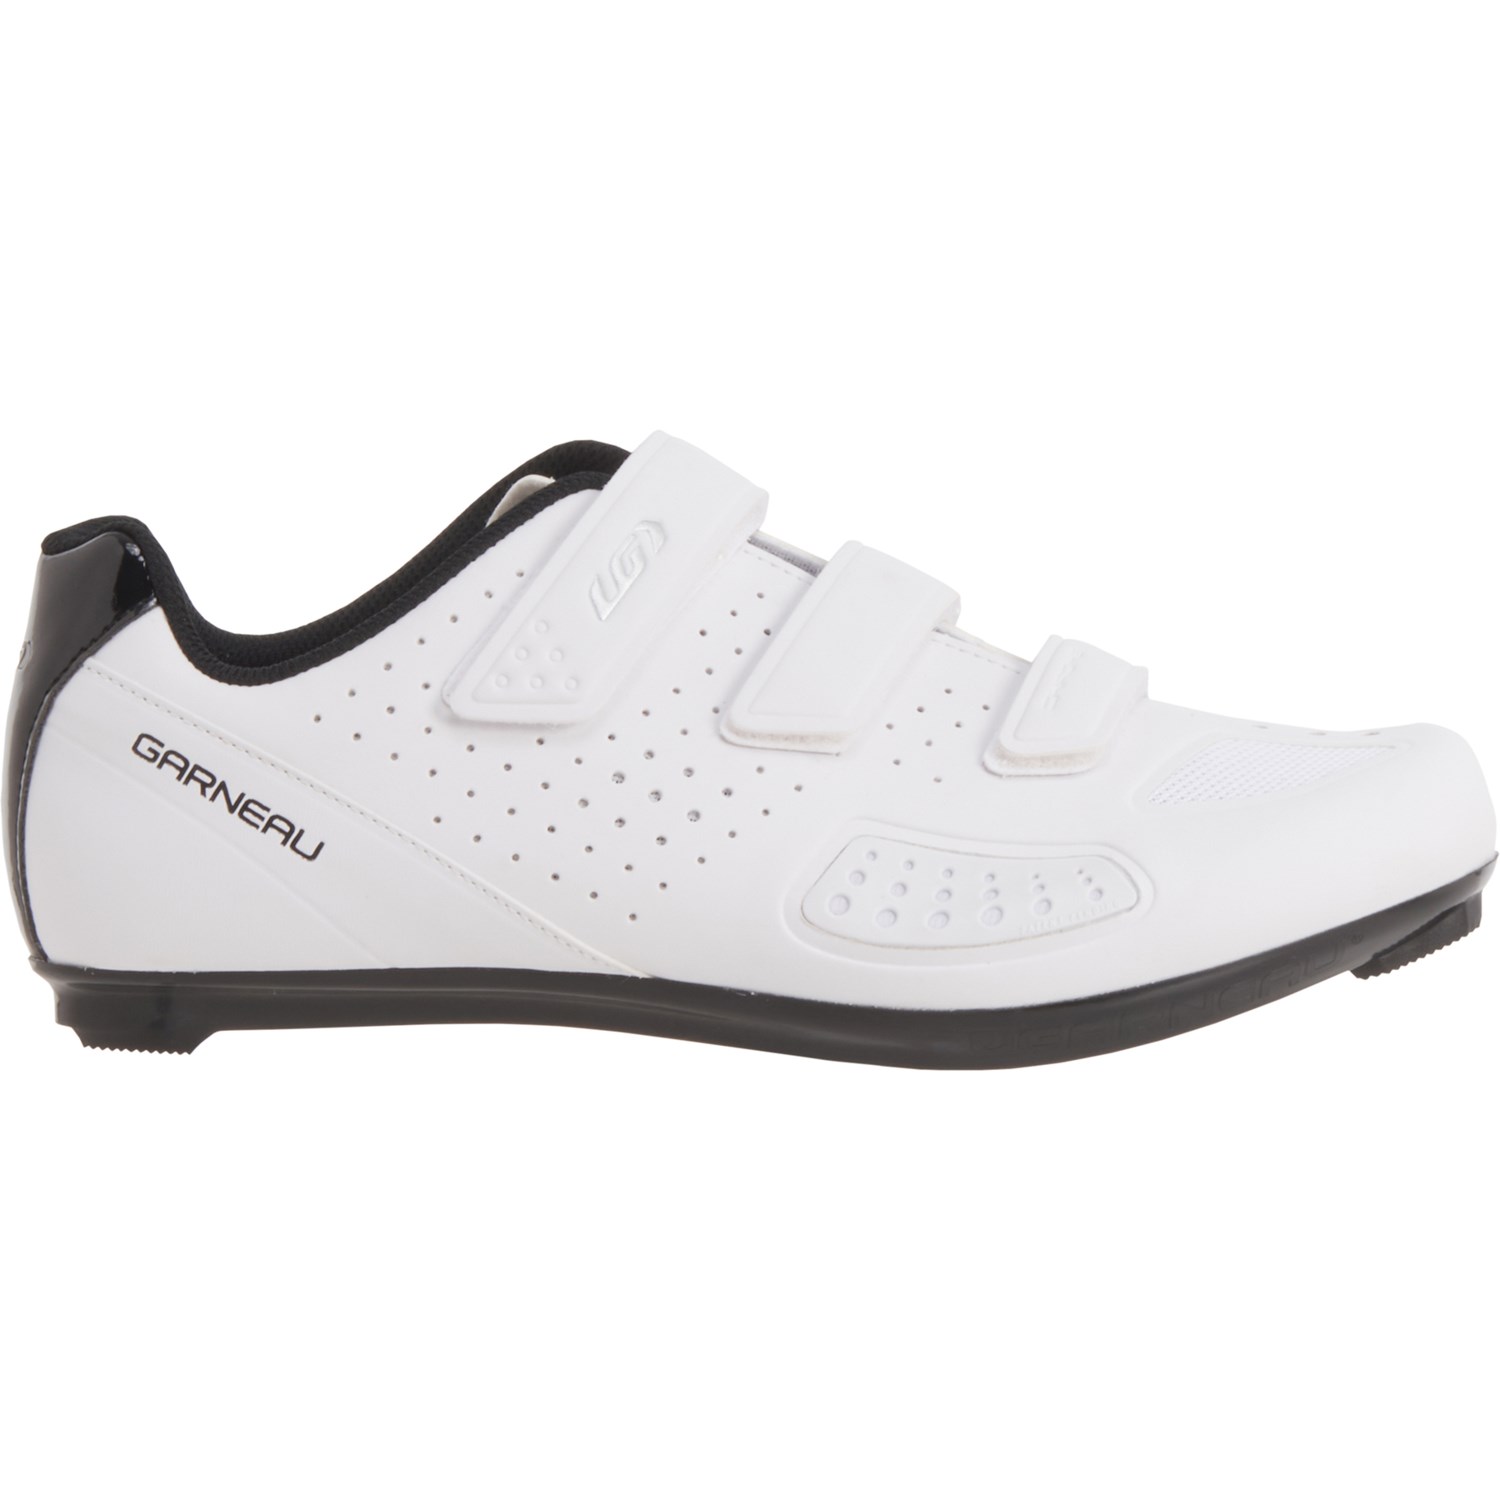 Louis Garneau Chrome II Cycling Shoes (For Men and Women) - Save 57%